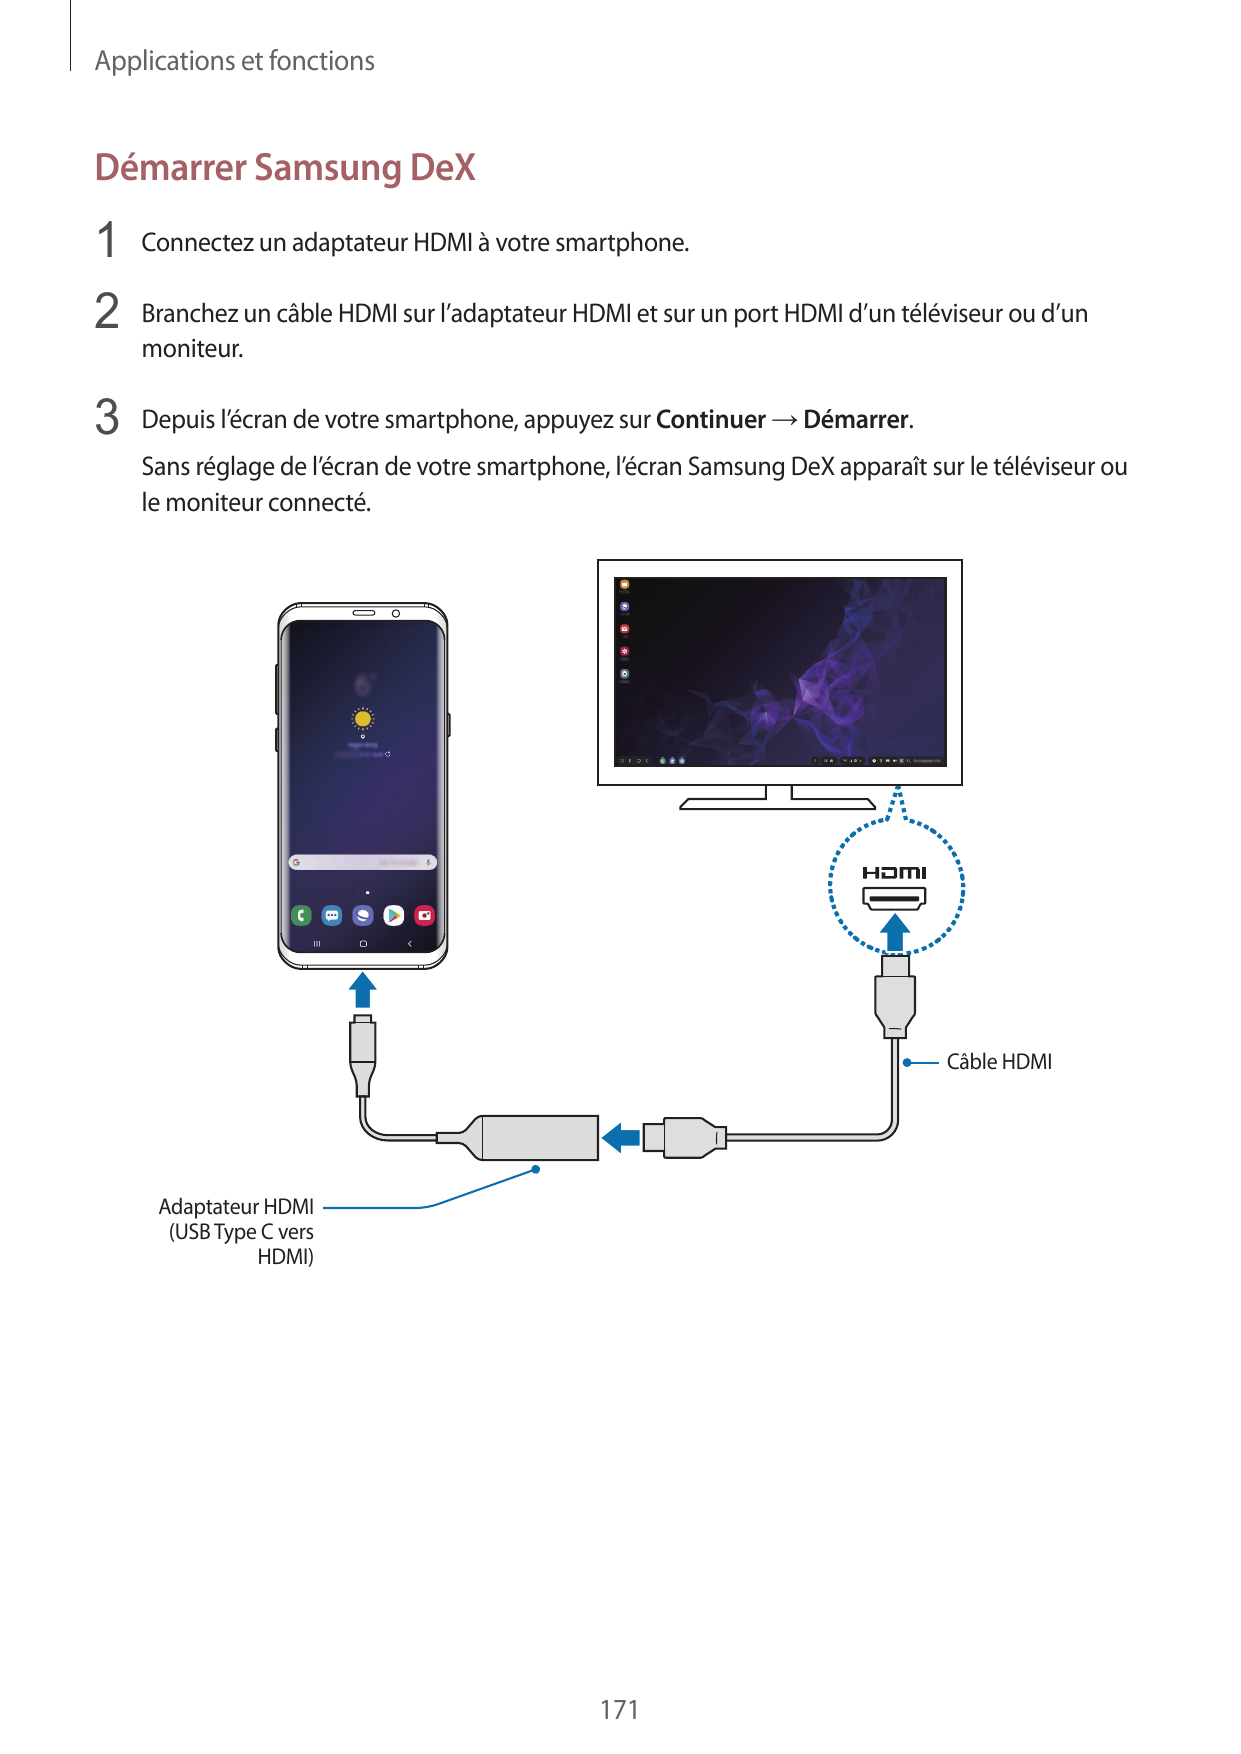 Applications et fonctionsDémarrer Samsung DeX1 Connectez un adaptateur HDMI à votre smartphone.2 Branchez un câble HDMI sur l’ad